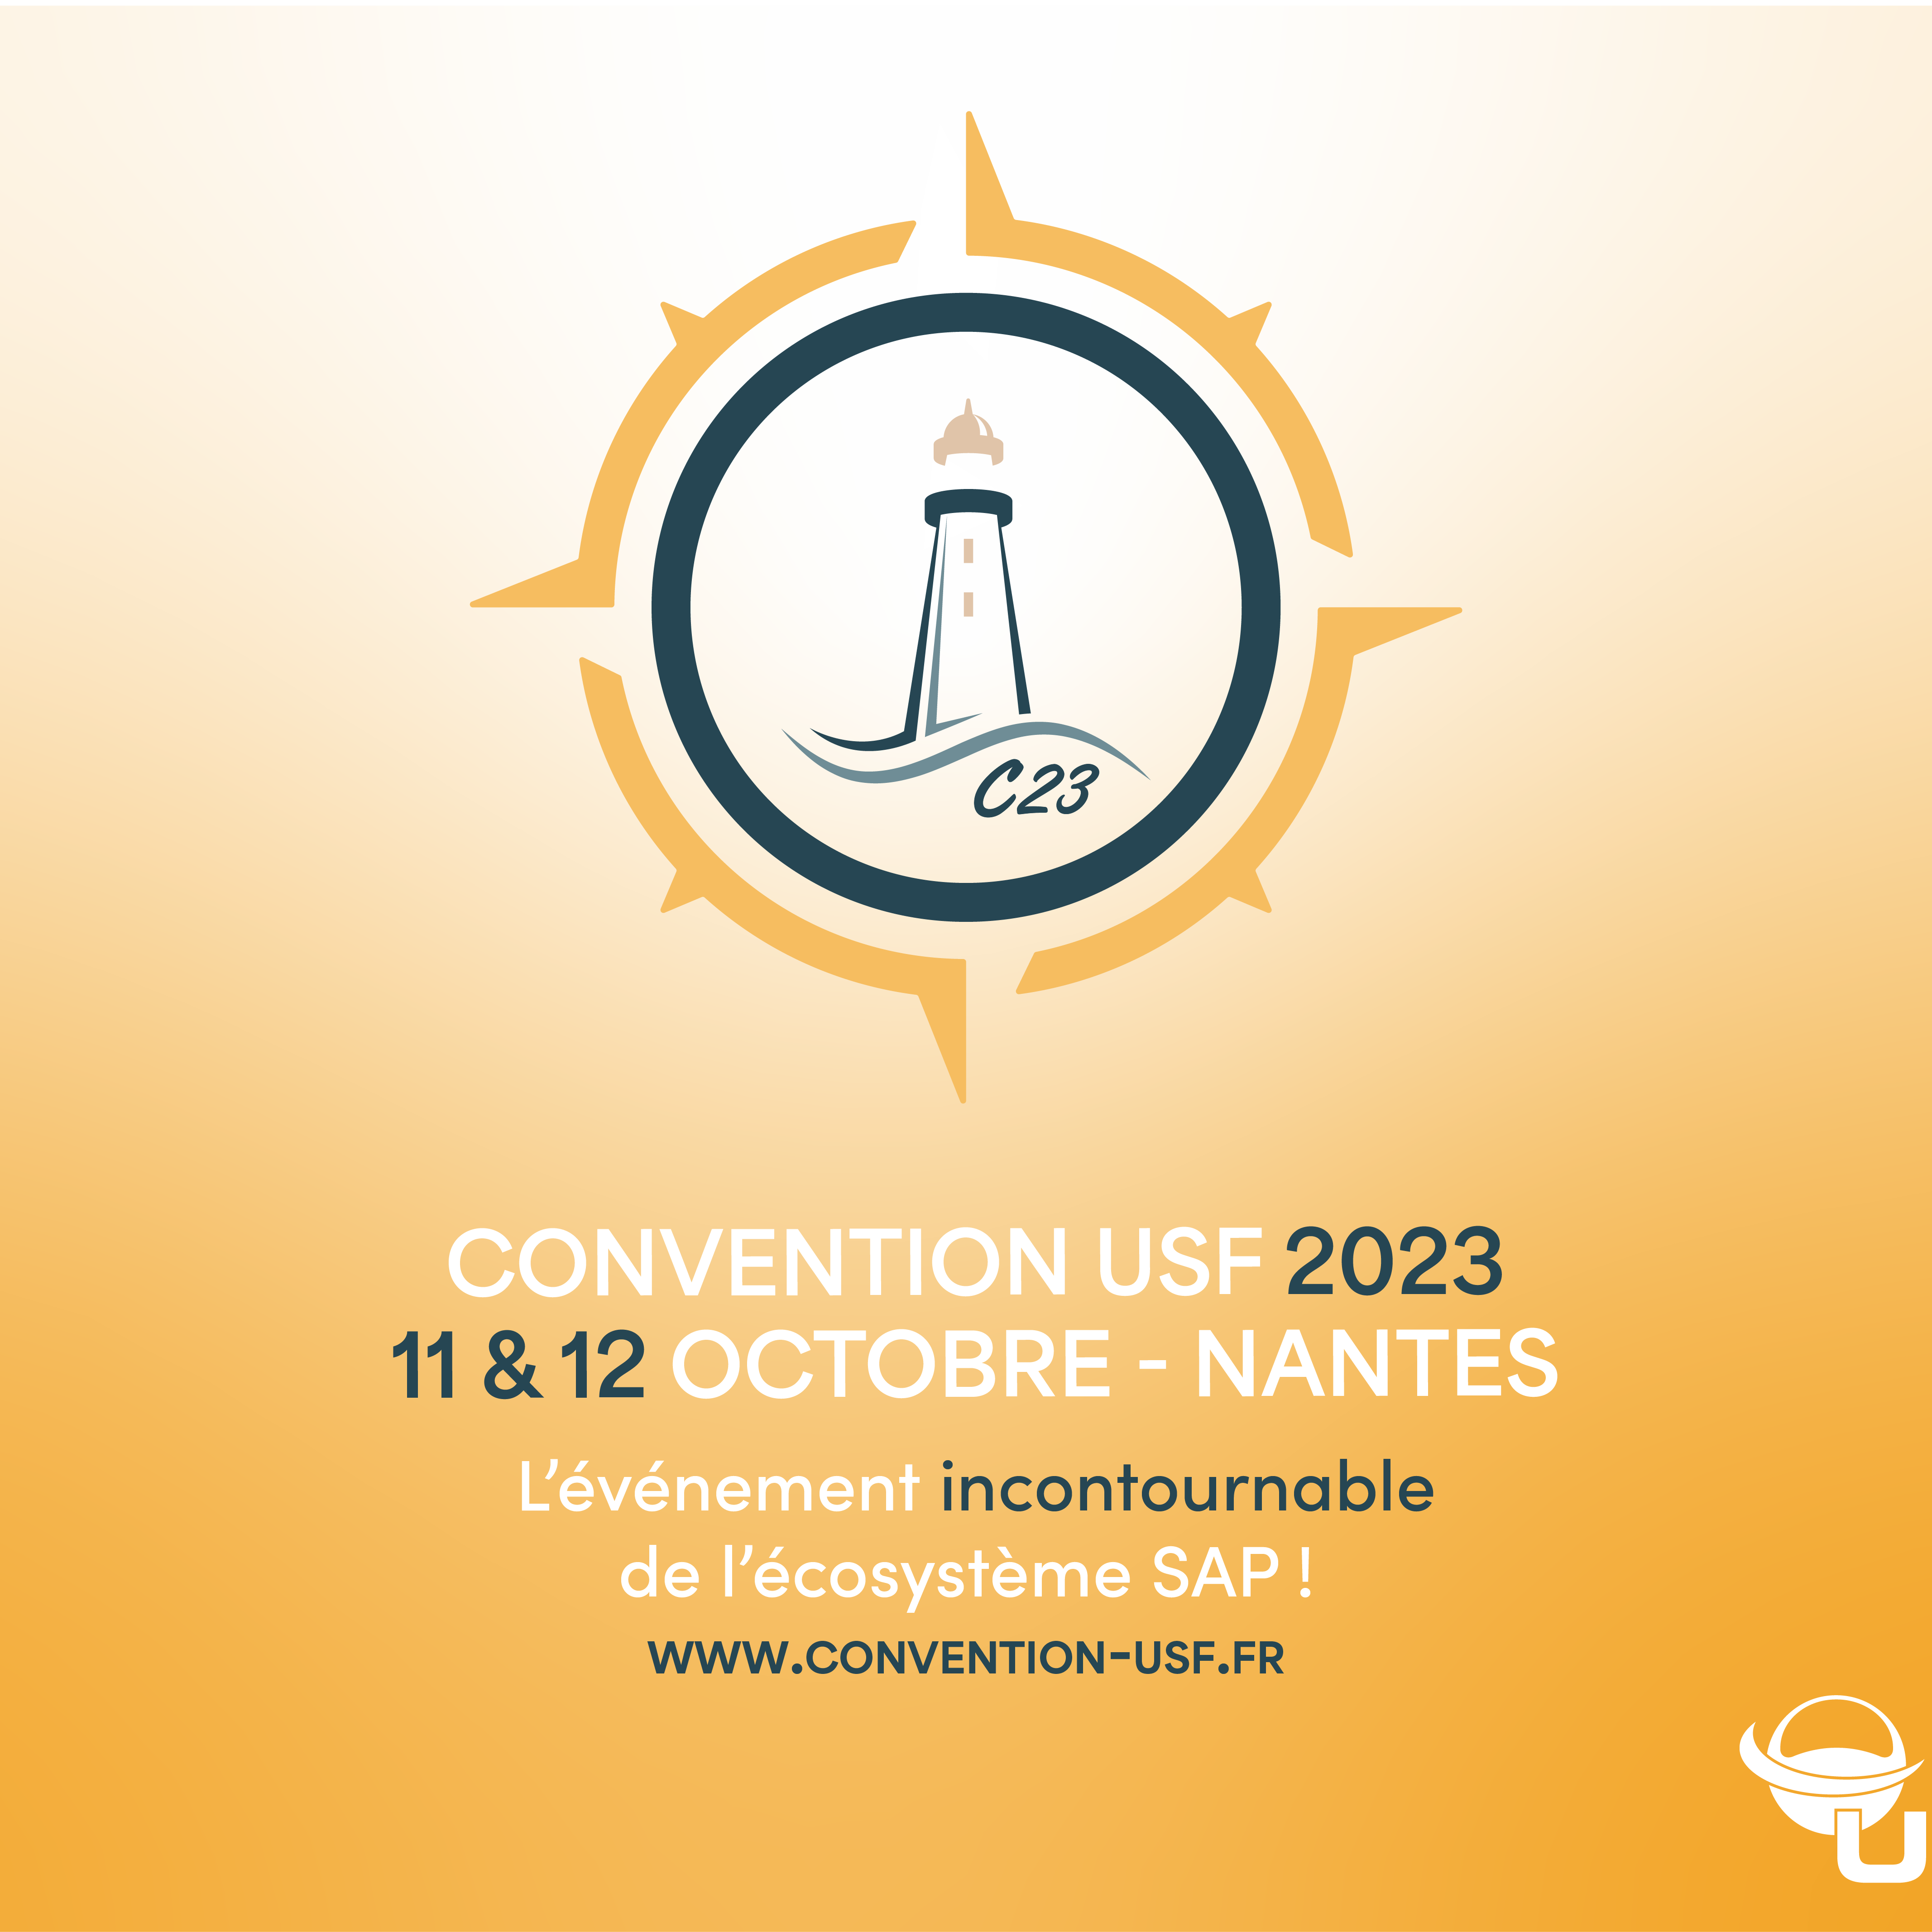 ViaAduc sera présent à la Convention USF 2023 les 11 et 12 octobre à Nantes (stand 32)